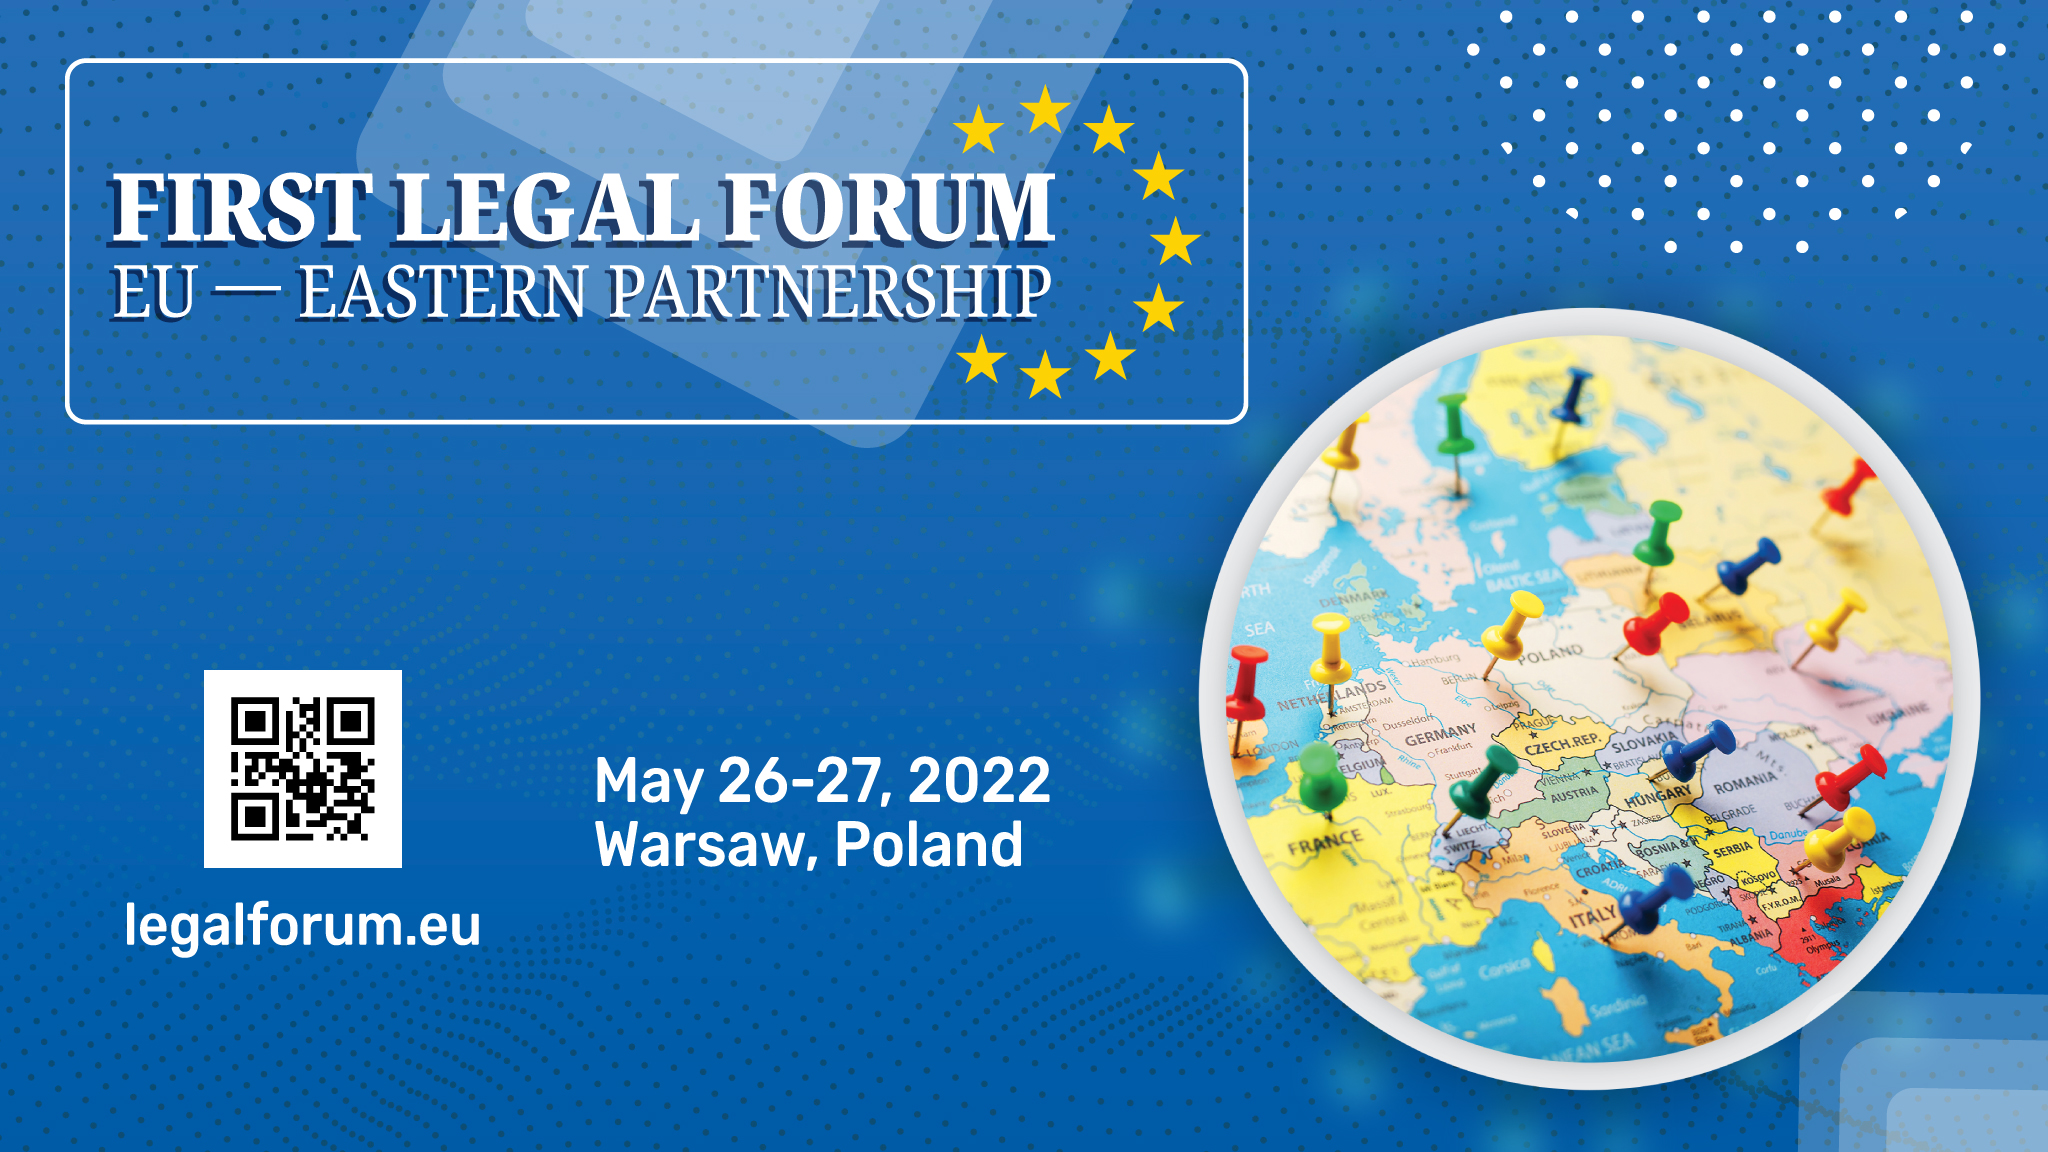 Pierwszego forum prawnego UE-Partnerstwa Wschodniego